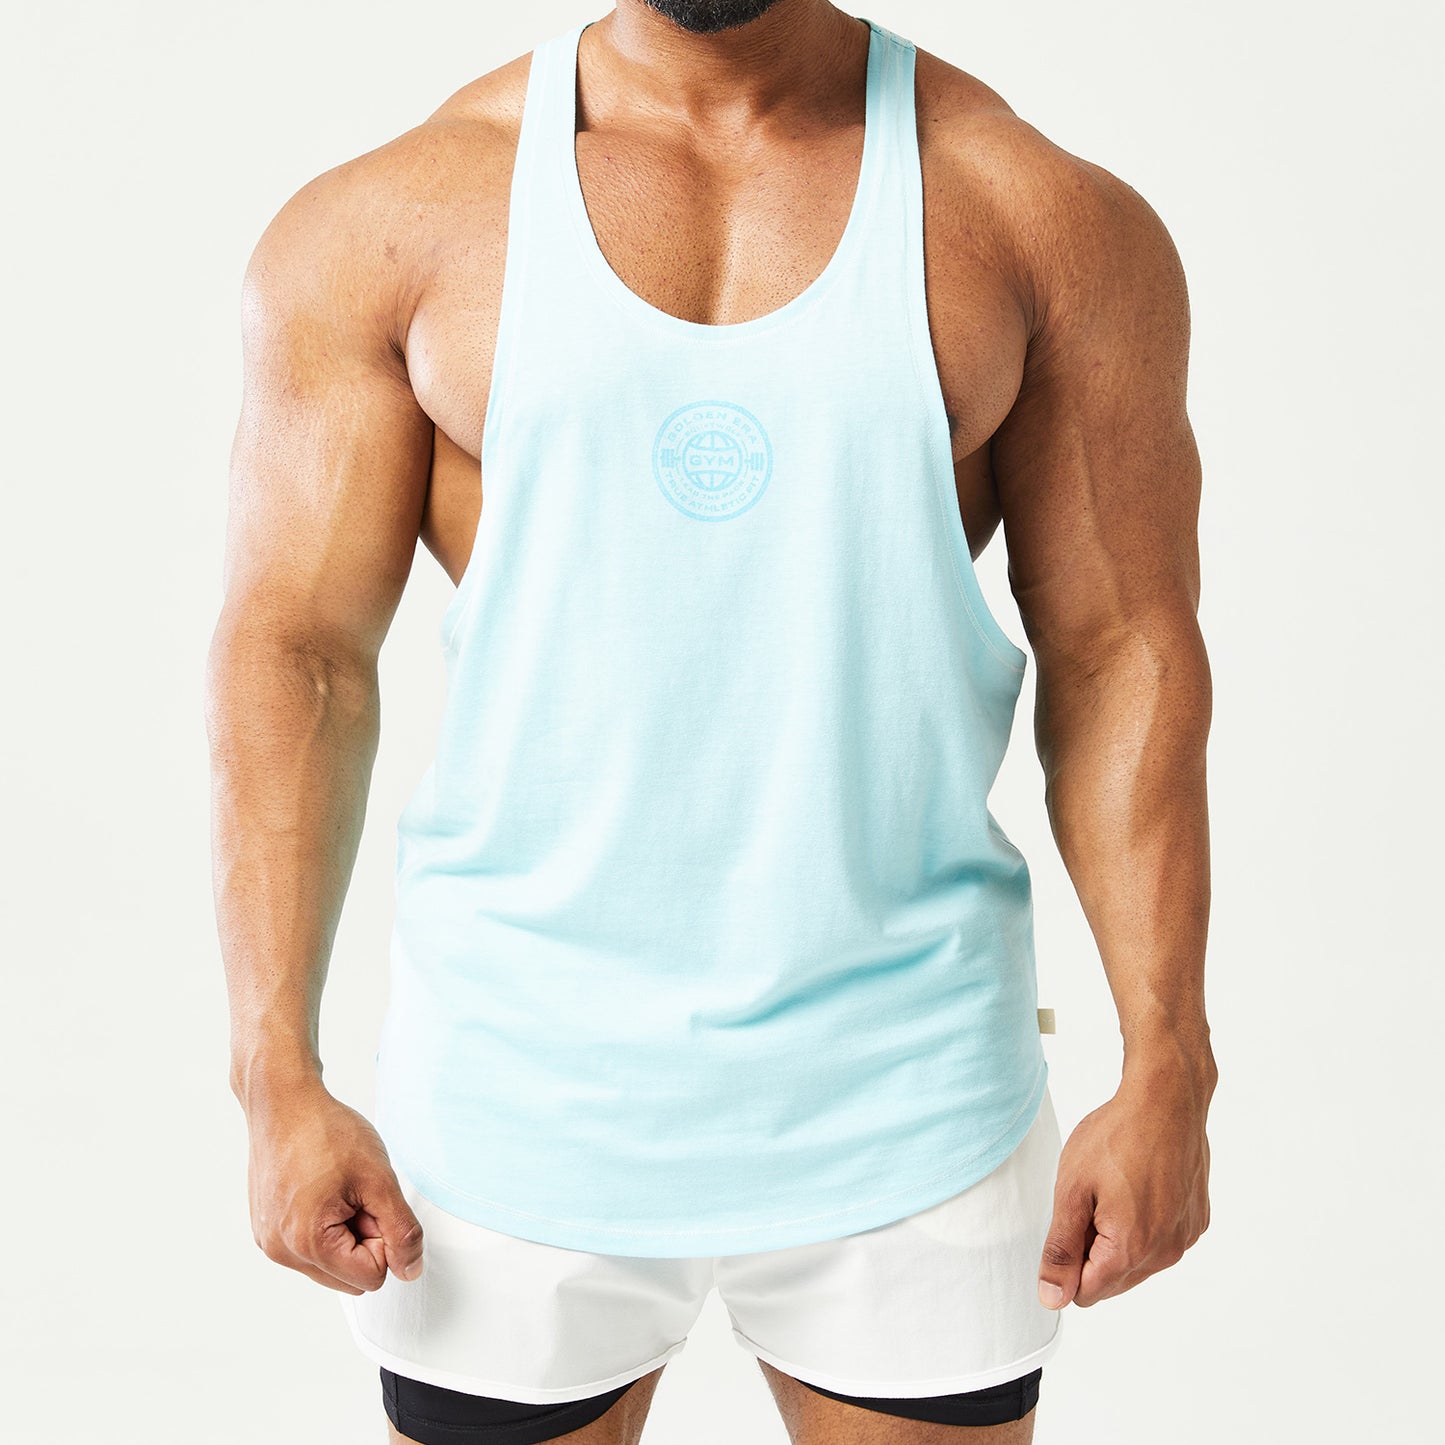 squatwolf-gym-wear-golden-era-stringer-blue-workout-stringers-vests-for-men